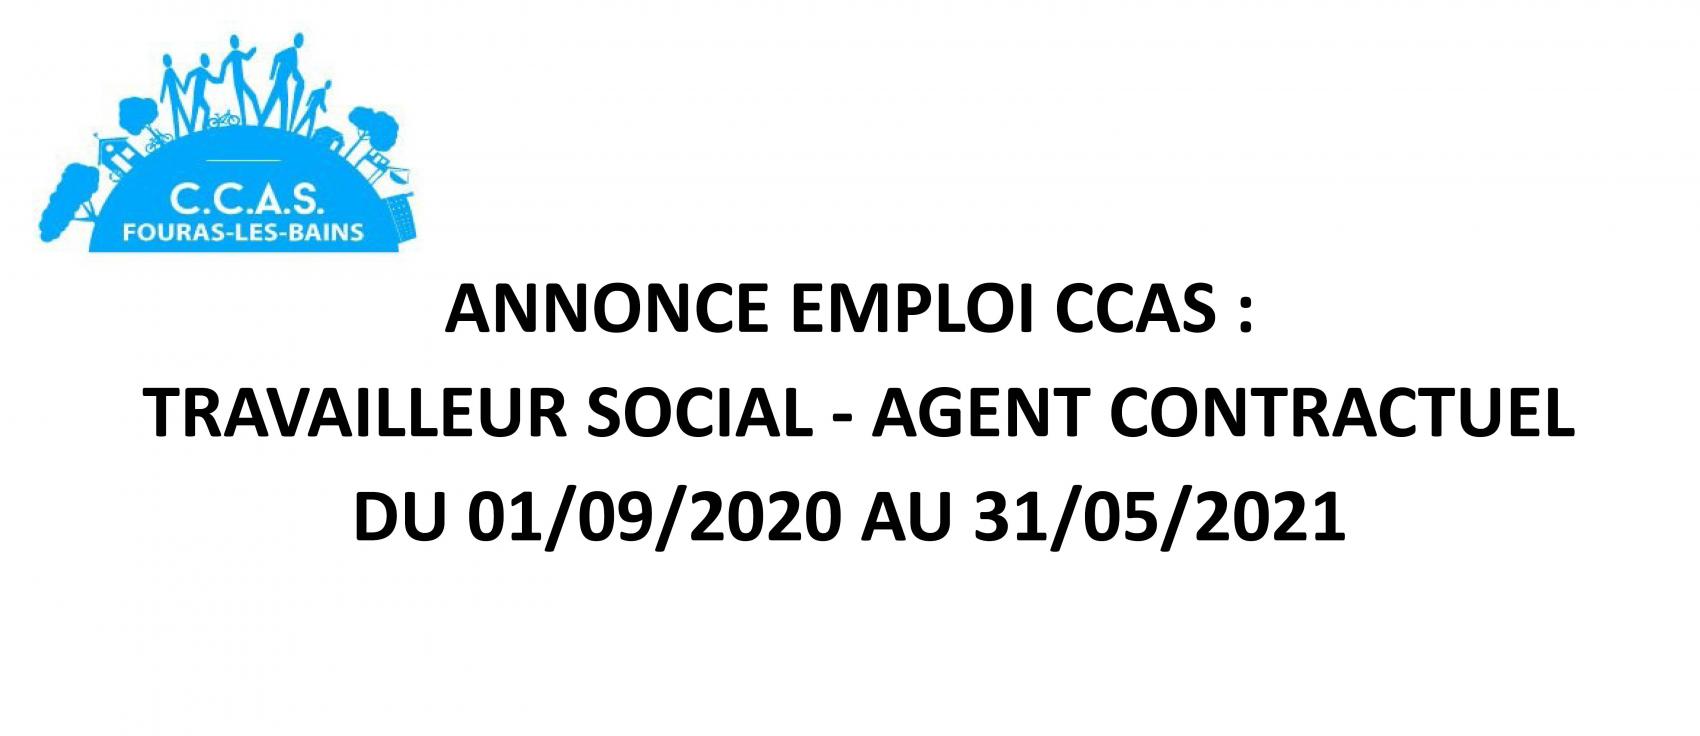 ANNONCE EMPLOI CCAS : TRAVAILLEUR SOCIAL - AGENT CONTRACTUEL DU 01/09/2020 AU 31/05/2021 